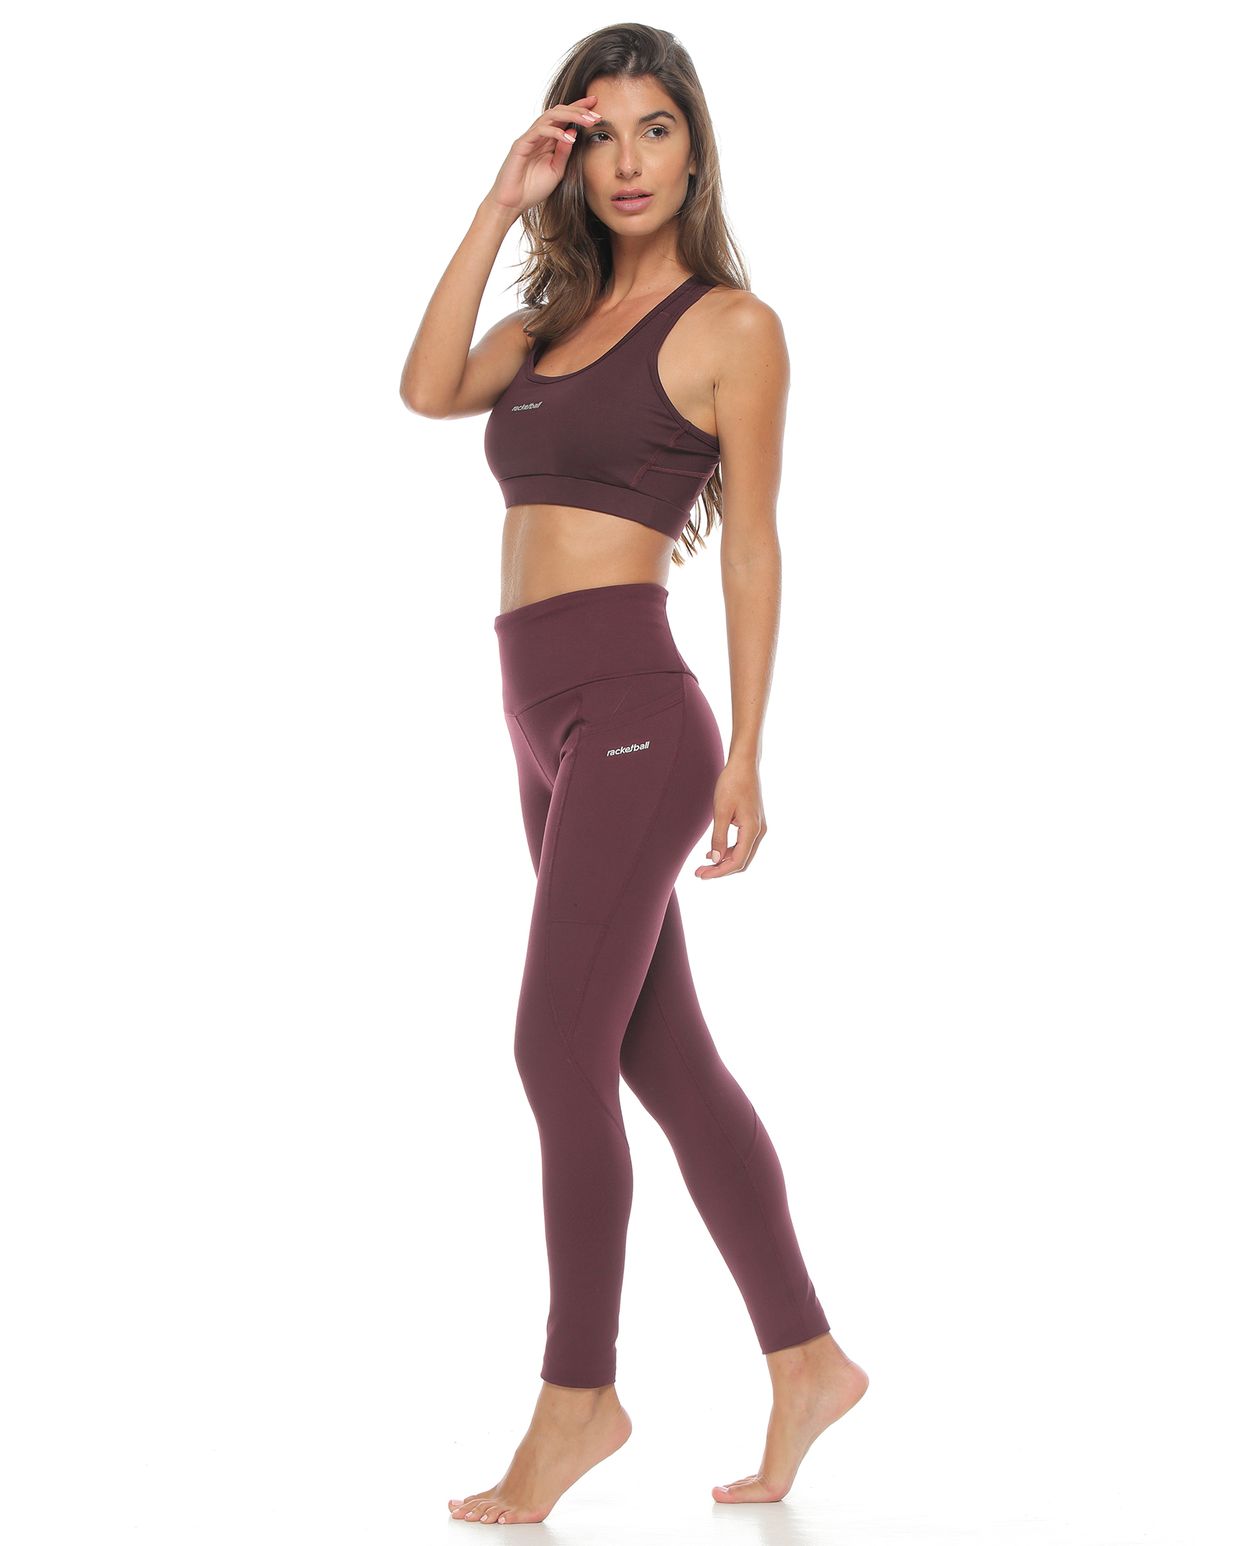 modelo con top y licra deportiva color berenjena para mujer cuerpo completo